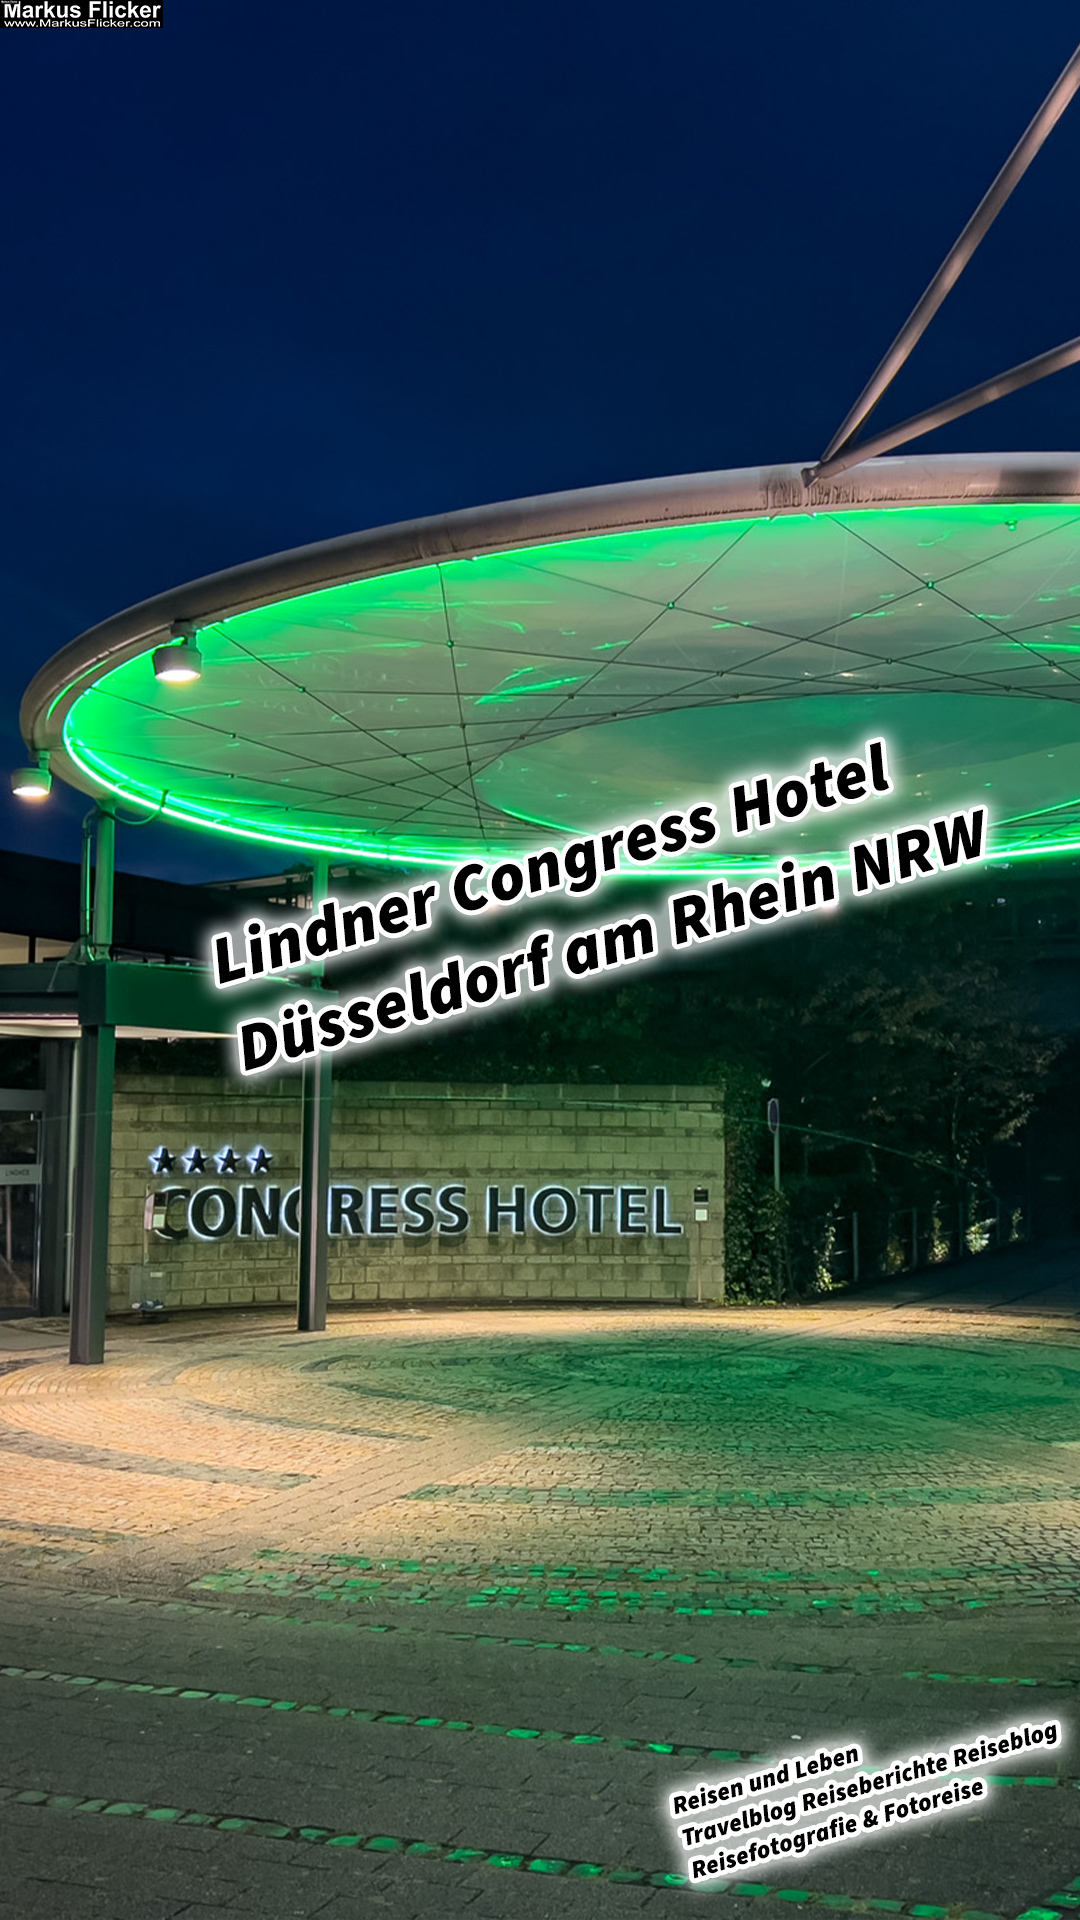 Lindner Congress Hotel Düsseldorf am Rhein NRW Deutschland